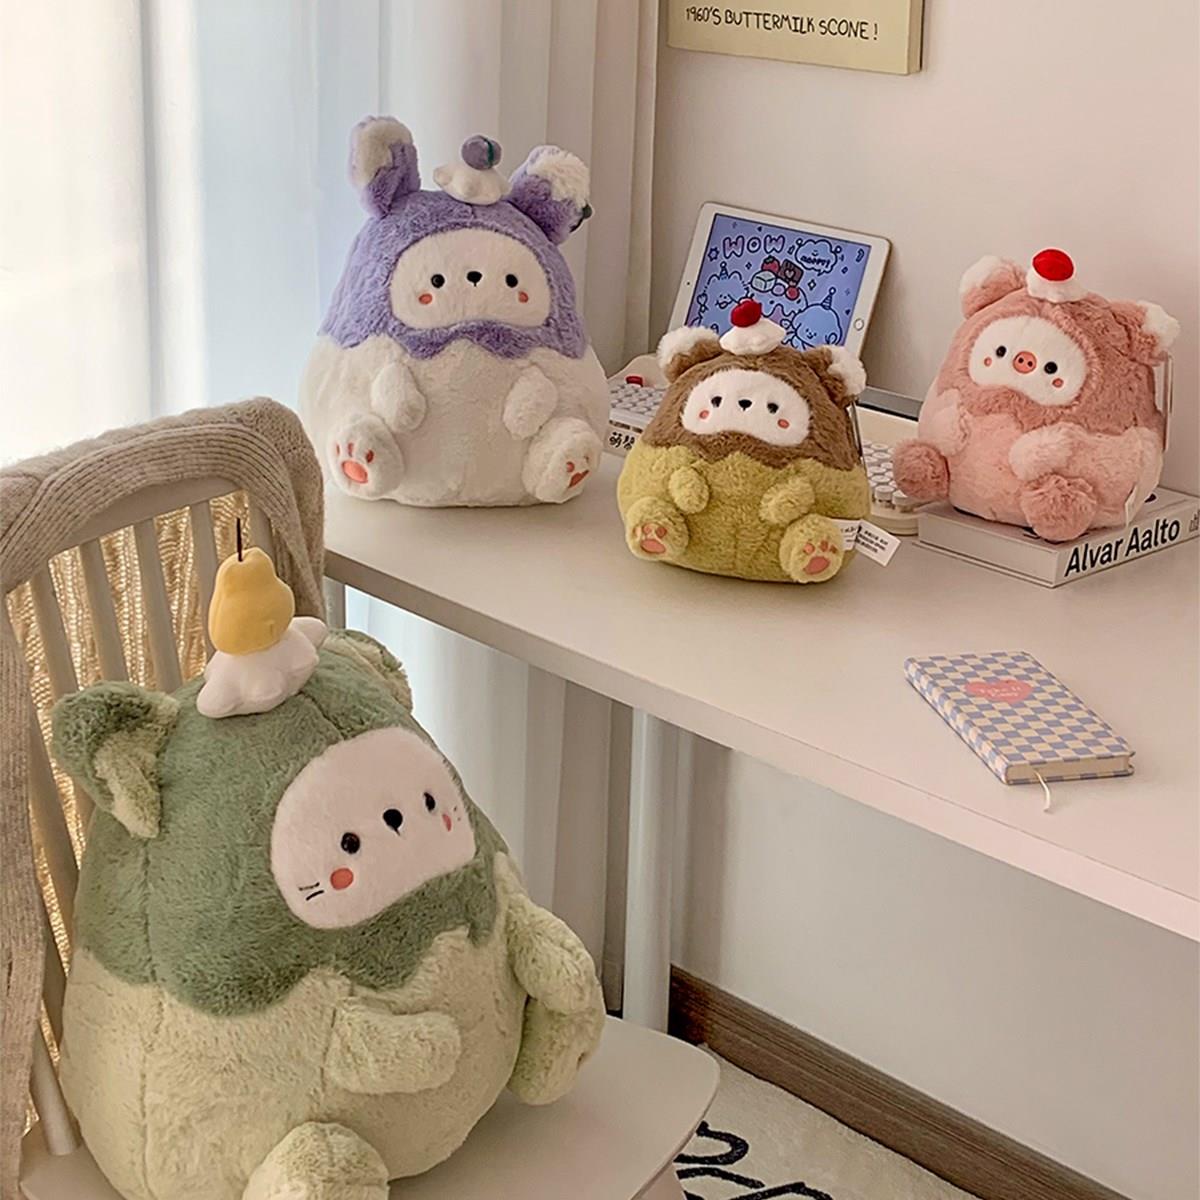 超萌蛋糕精灵小猪猫咪玩偶毛绒玩具抱枕沙发摆件儿童公仔布娃娃